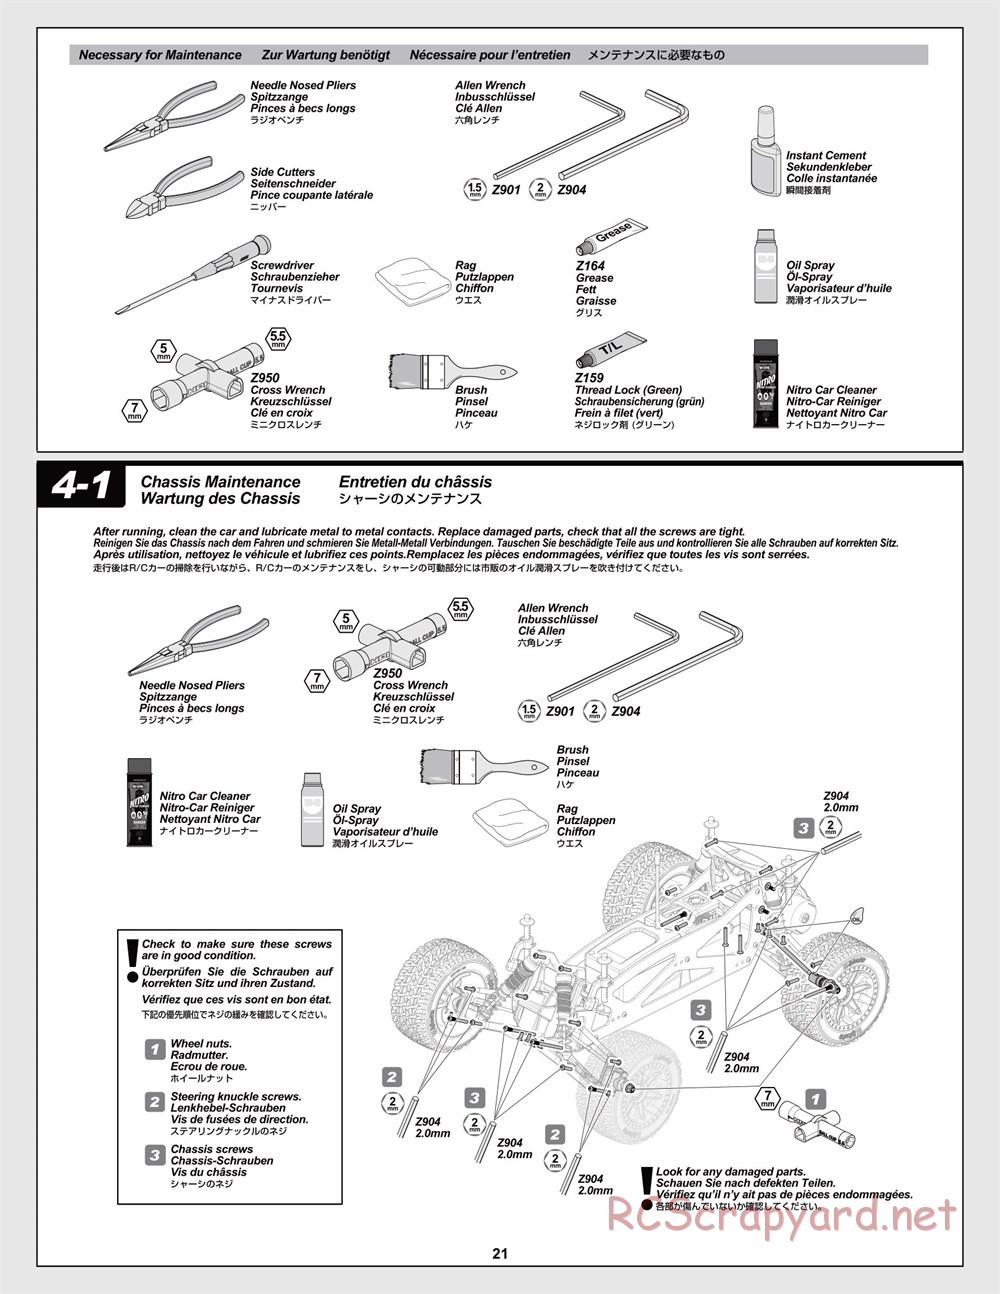 HPI - Jumpshot MT V2 - Manual - Page 21